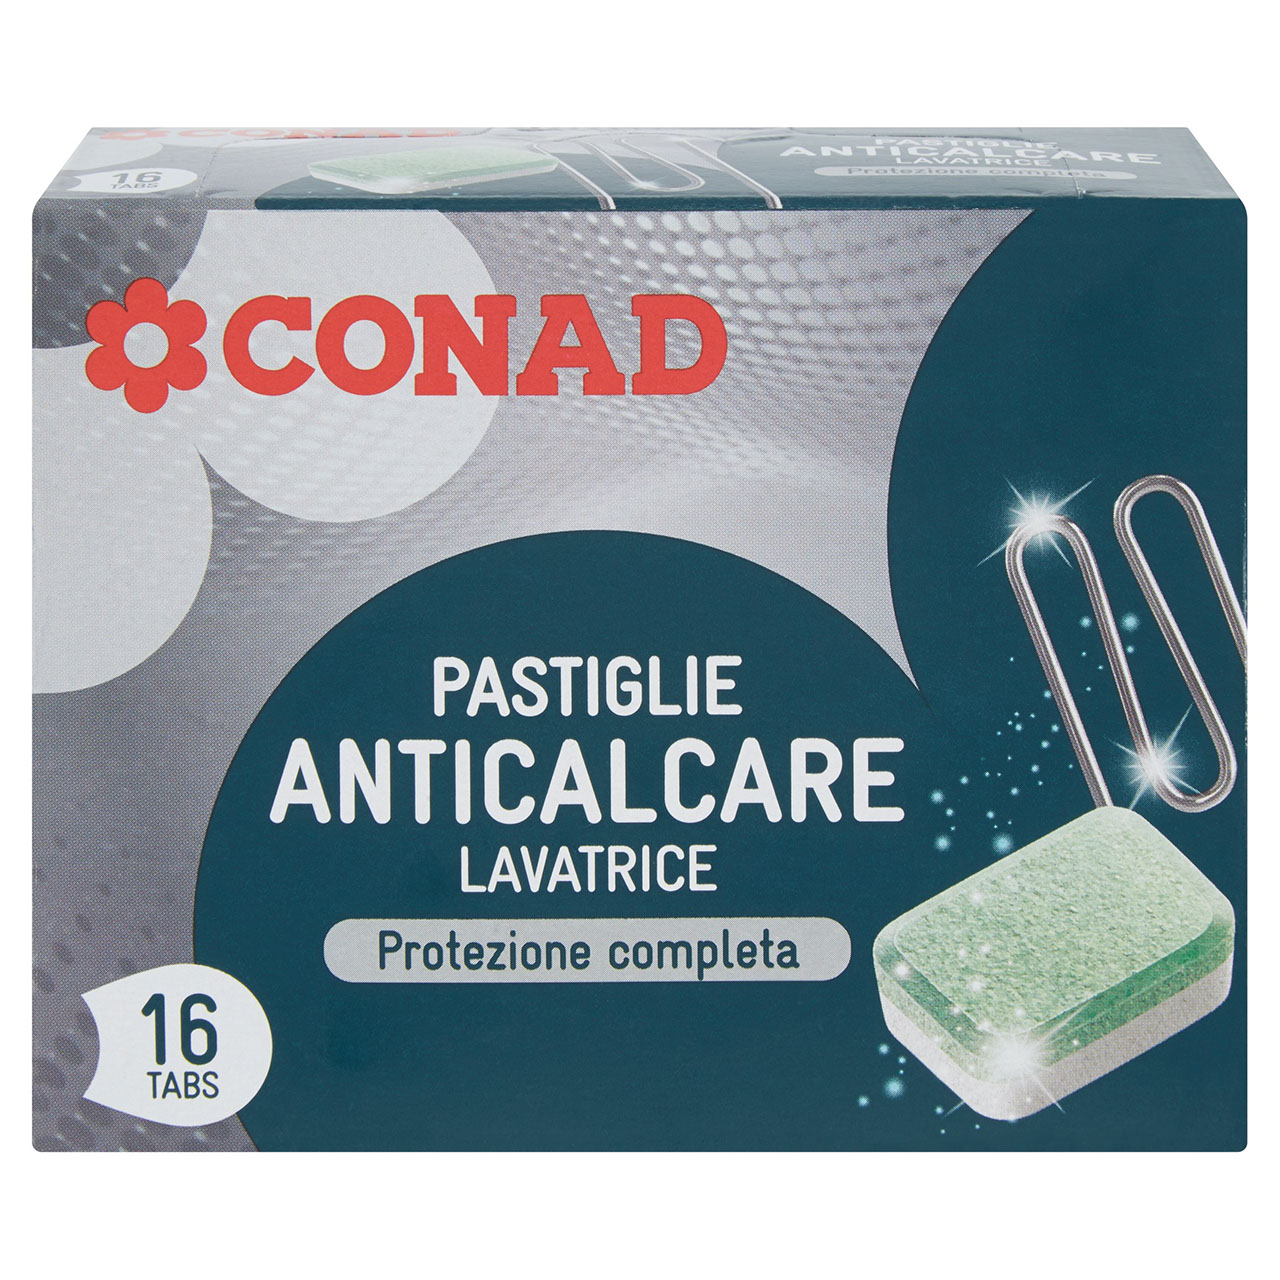 Pastiglie Anticalcare Lavatrice 16 tabs 256g Conad